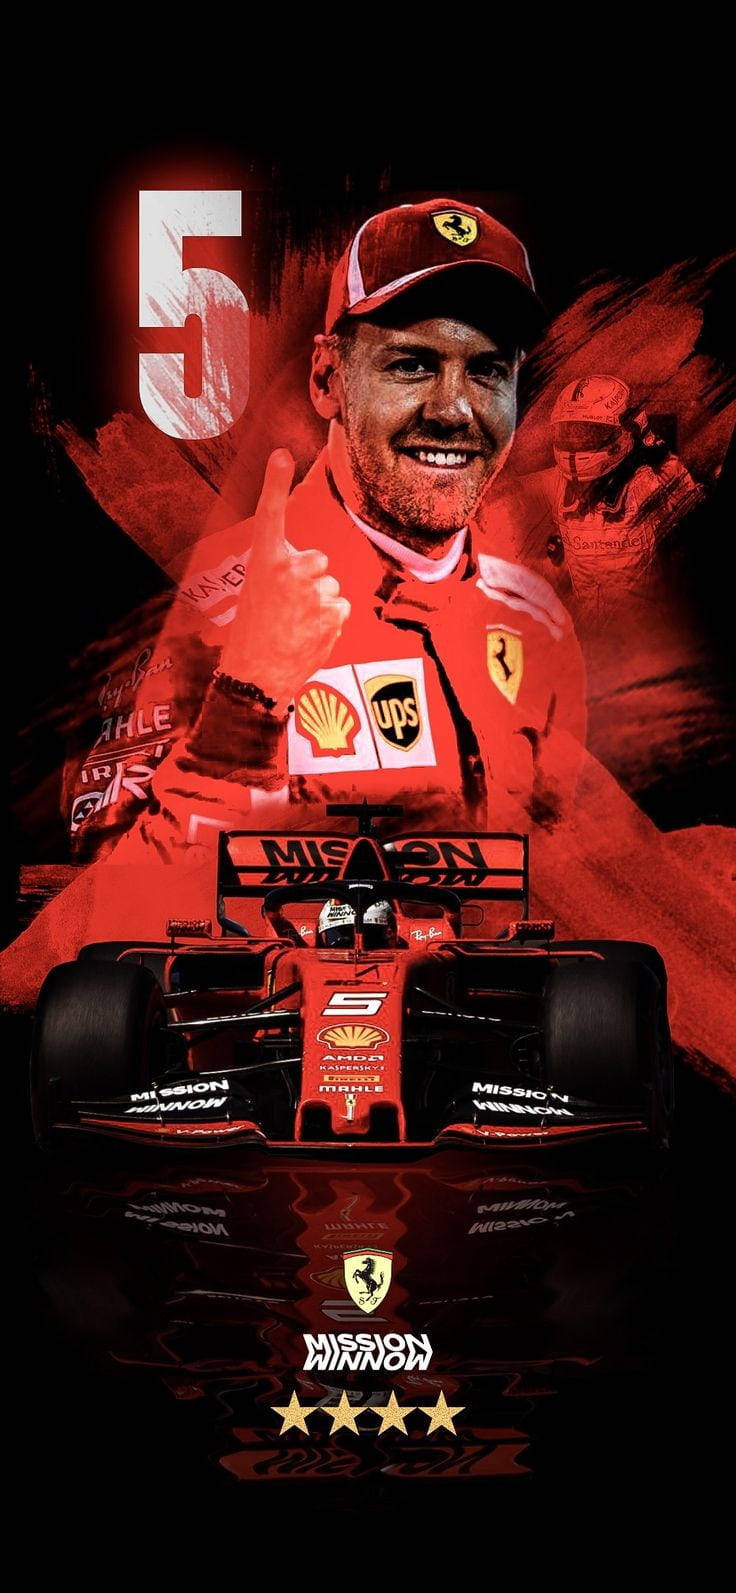 F1 Racer Sebastian Vettel With Car